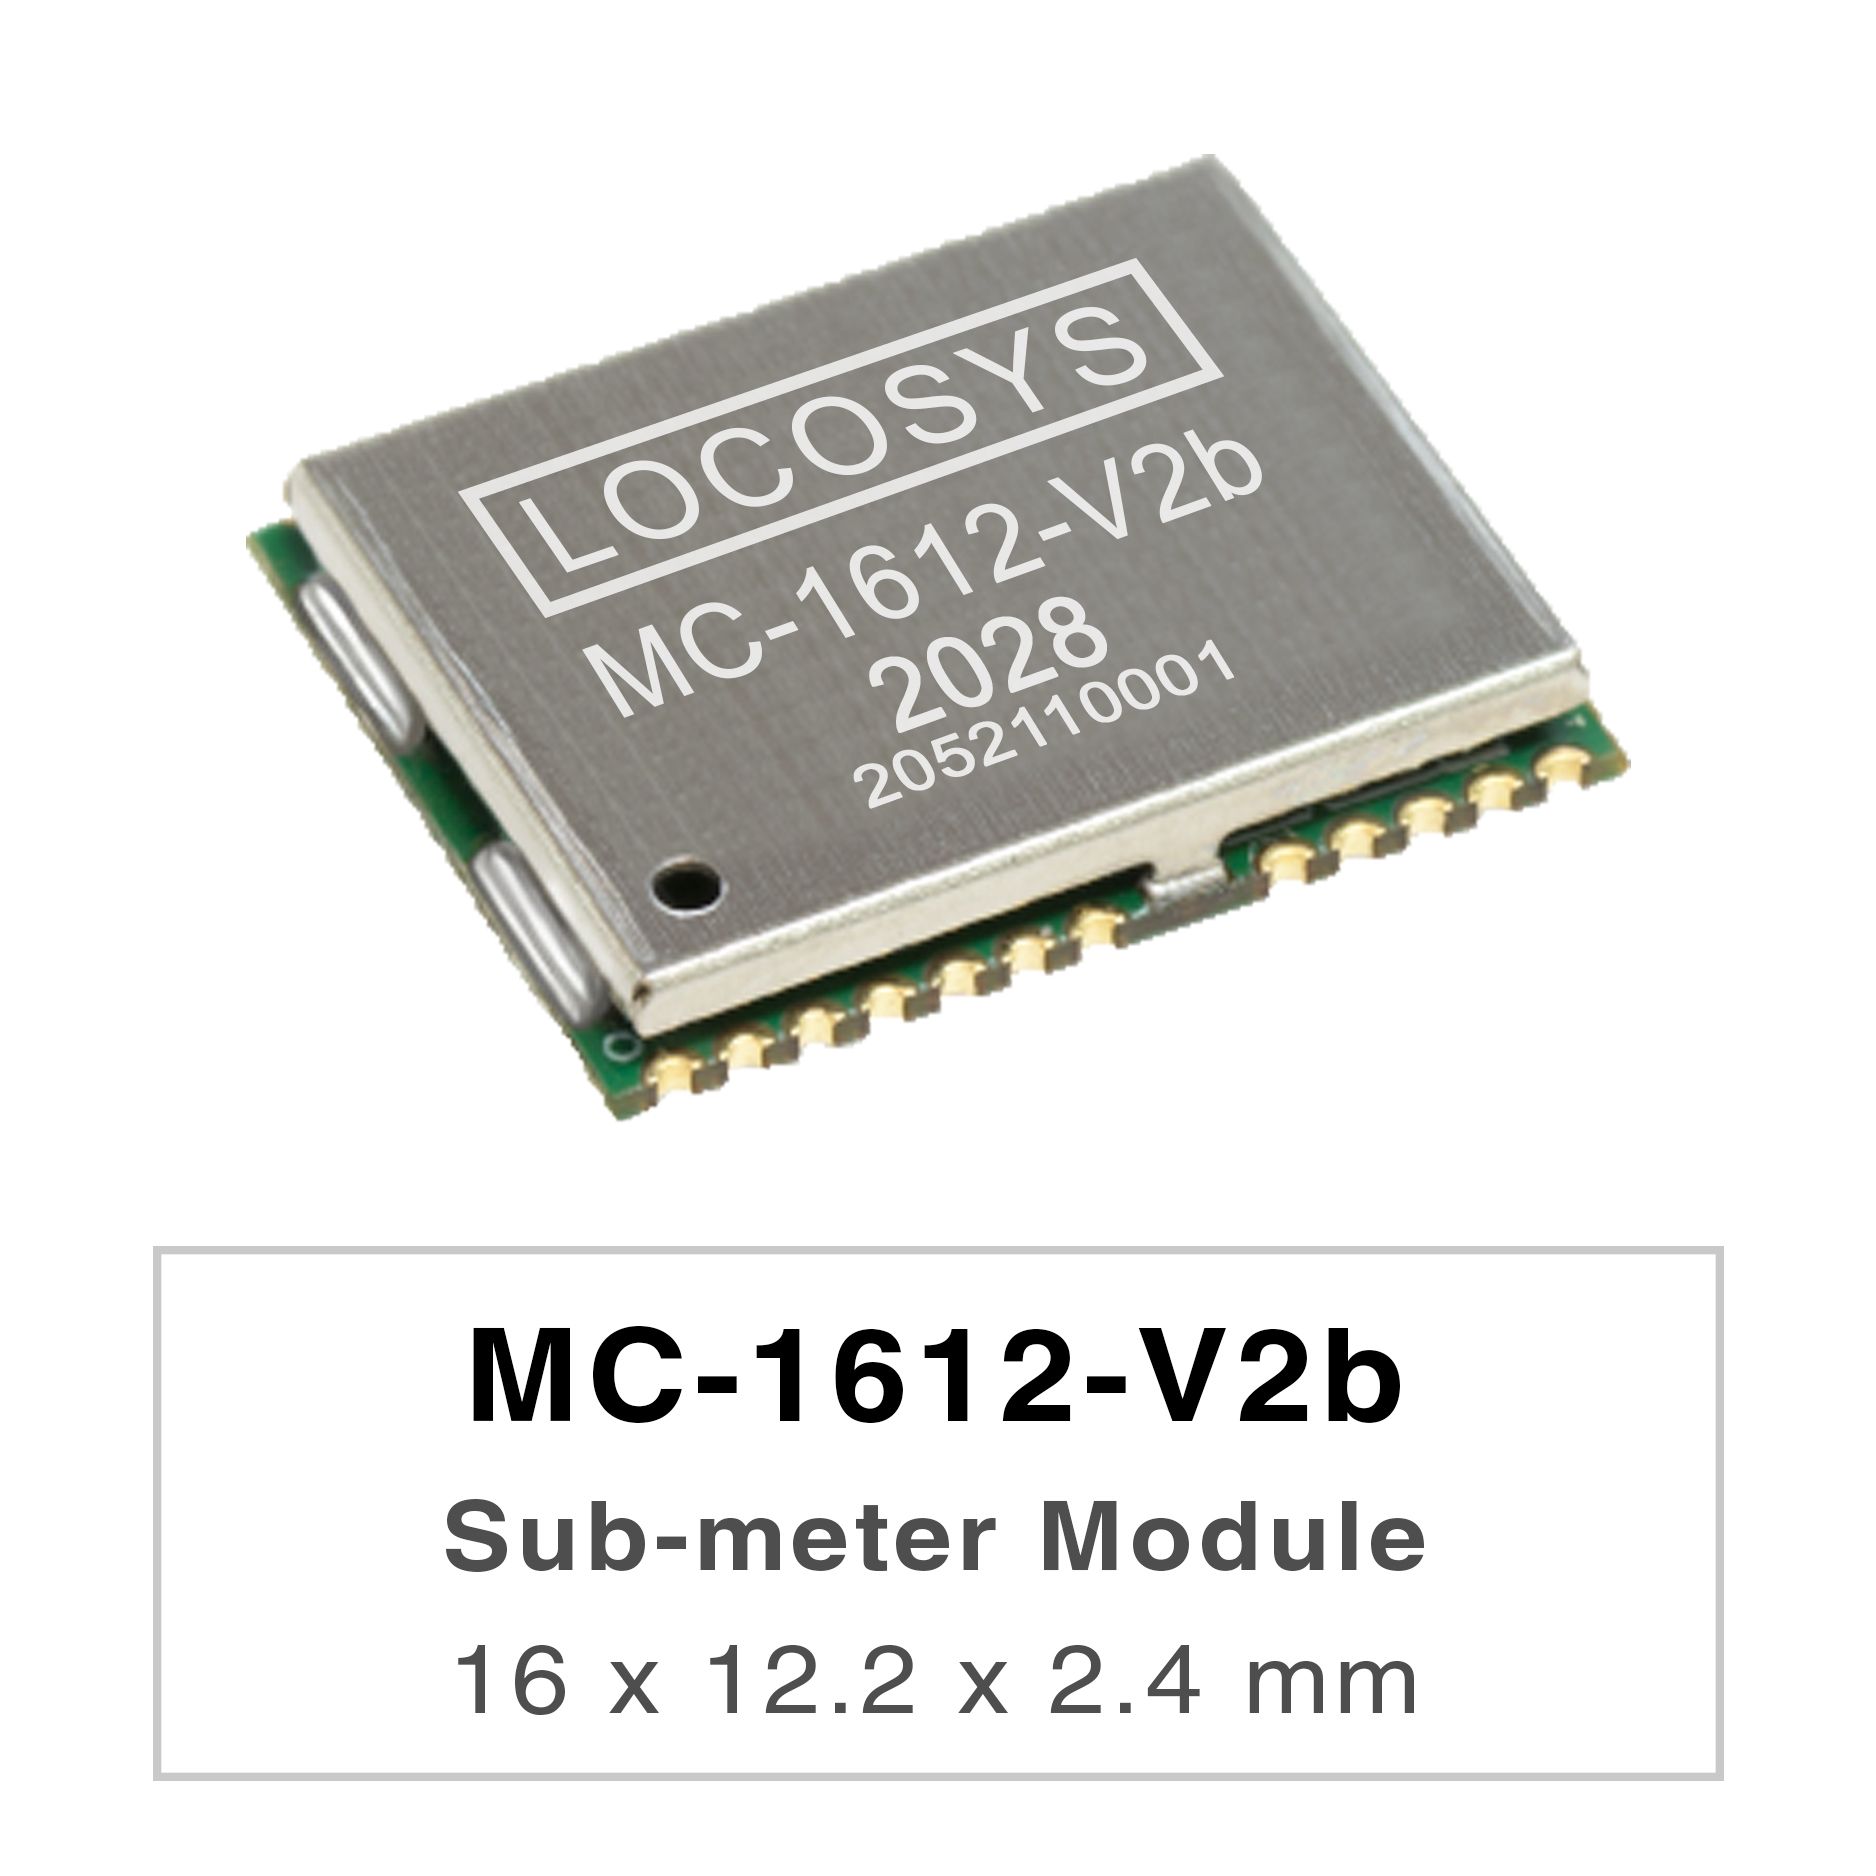 <br />LOCOSYS MC-1612-Vxx シリーズは、すべての地球規模の民間ナビゲーション システムを追跡できる
    高性能デュアルバンド GNSS 測位モジュール
    です。12 nm プロセスを採用し、効率的な
    <br />電力管理アーキテクチャを統合して、低電力と高感度を実現します。